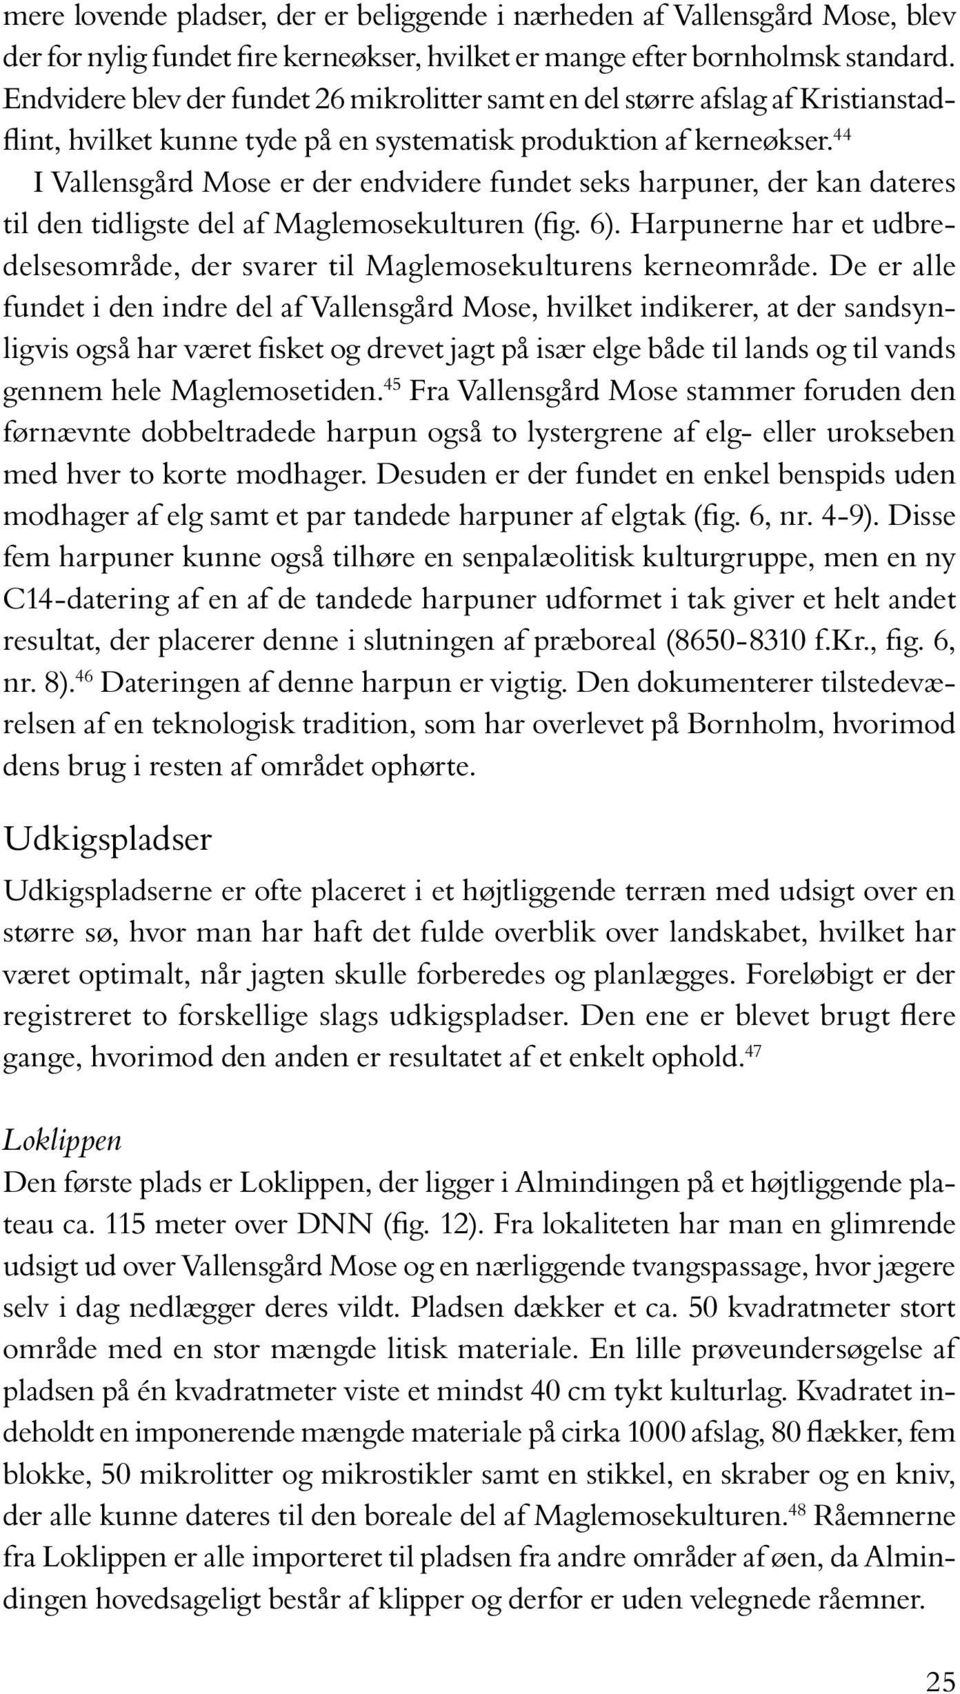 44 I Vallensgård Mose er der endvidere fundet seks harpuner, der kan dateres til den tidligste del af Maglemosekulturen (fig. 6).